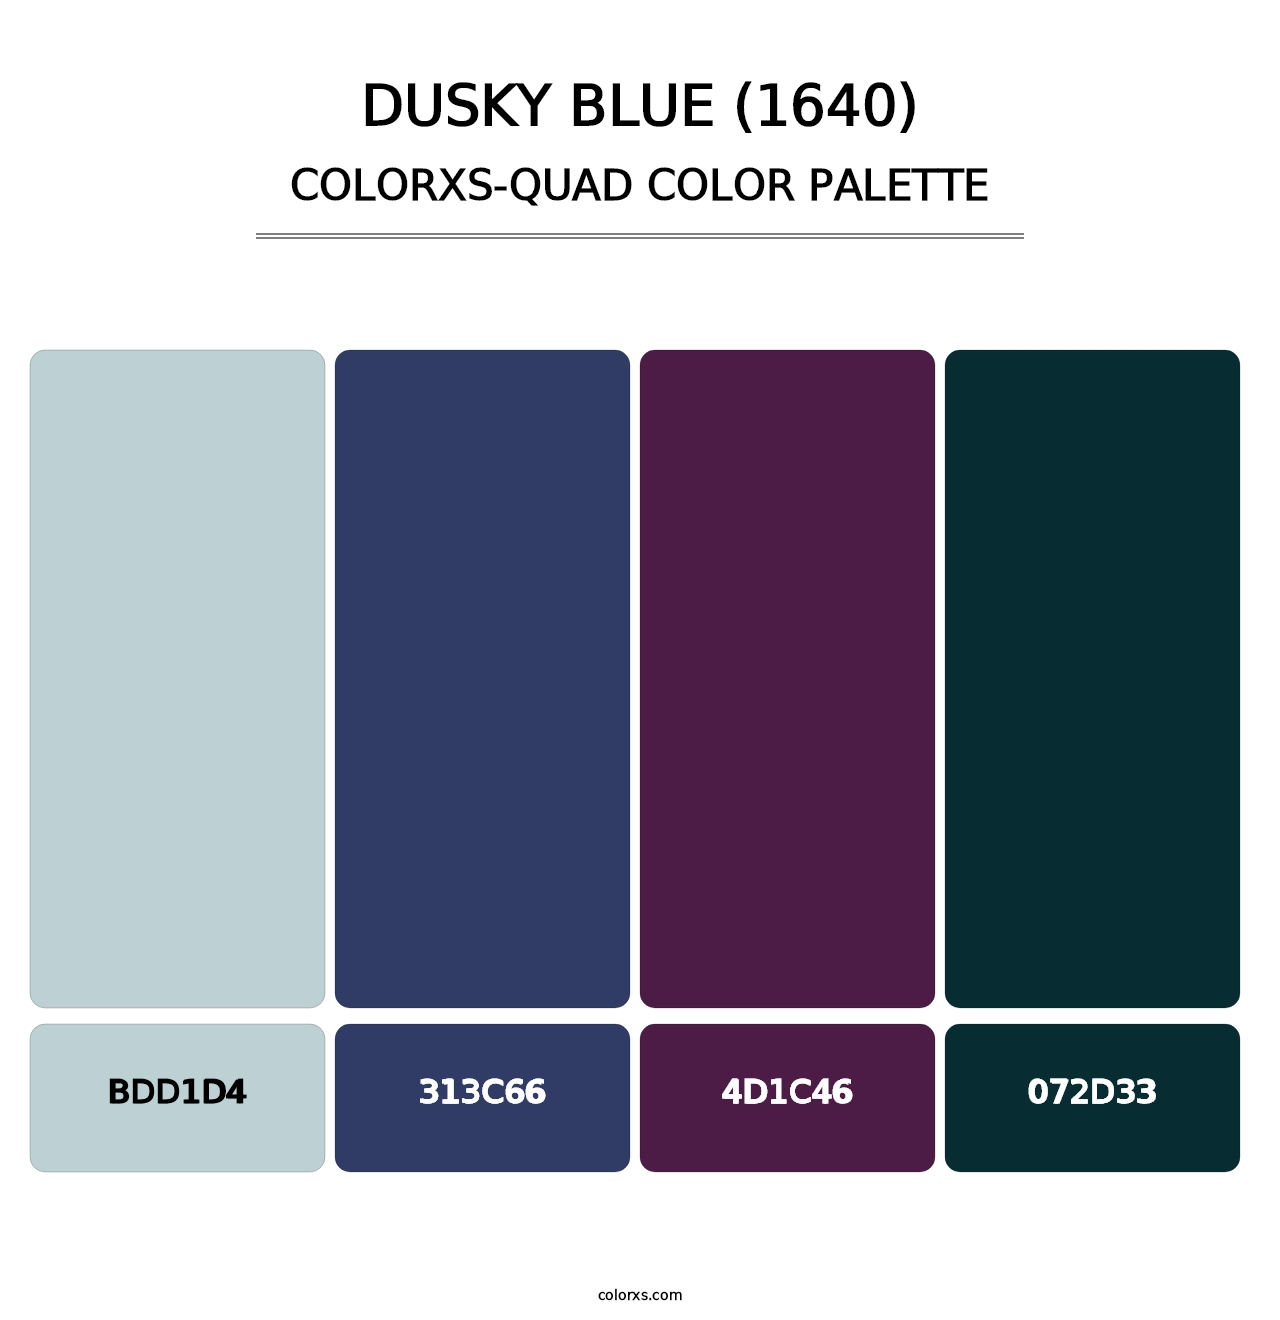 Dusky Blue (1640) - Colorxs Quad Palette